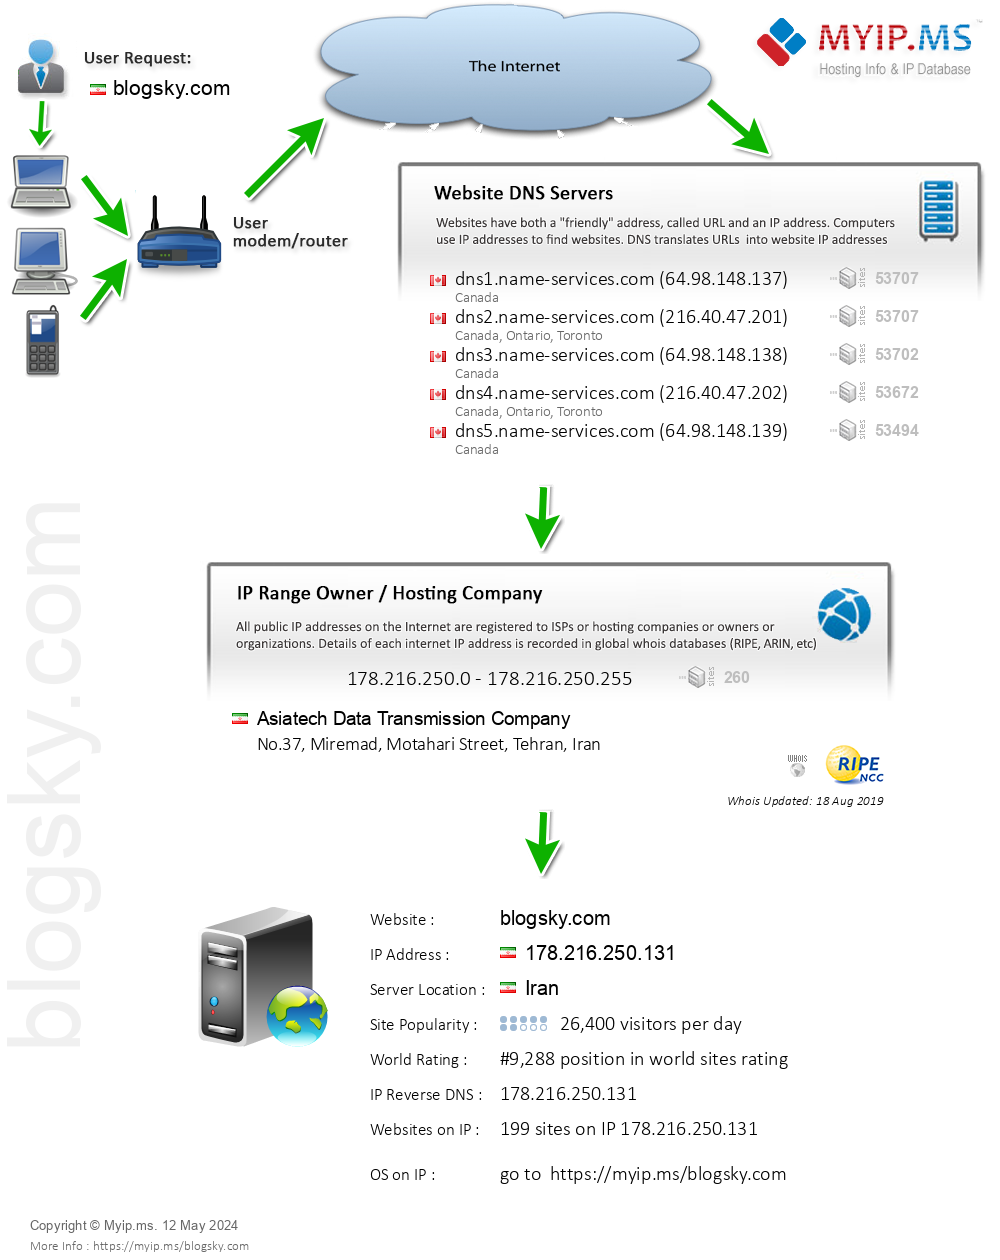 Blogsky.com - Website Hosting Visual IP Diagram